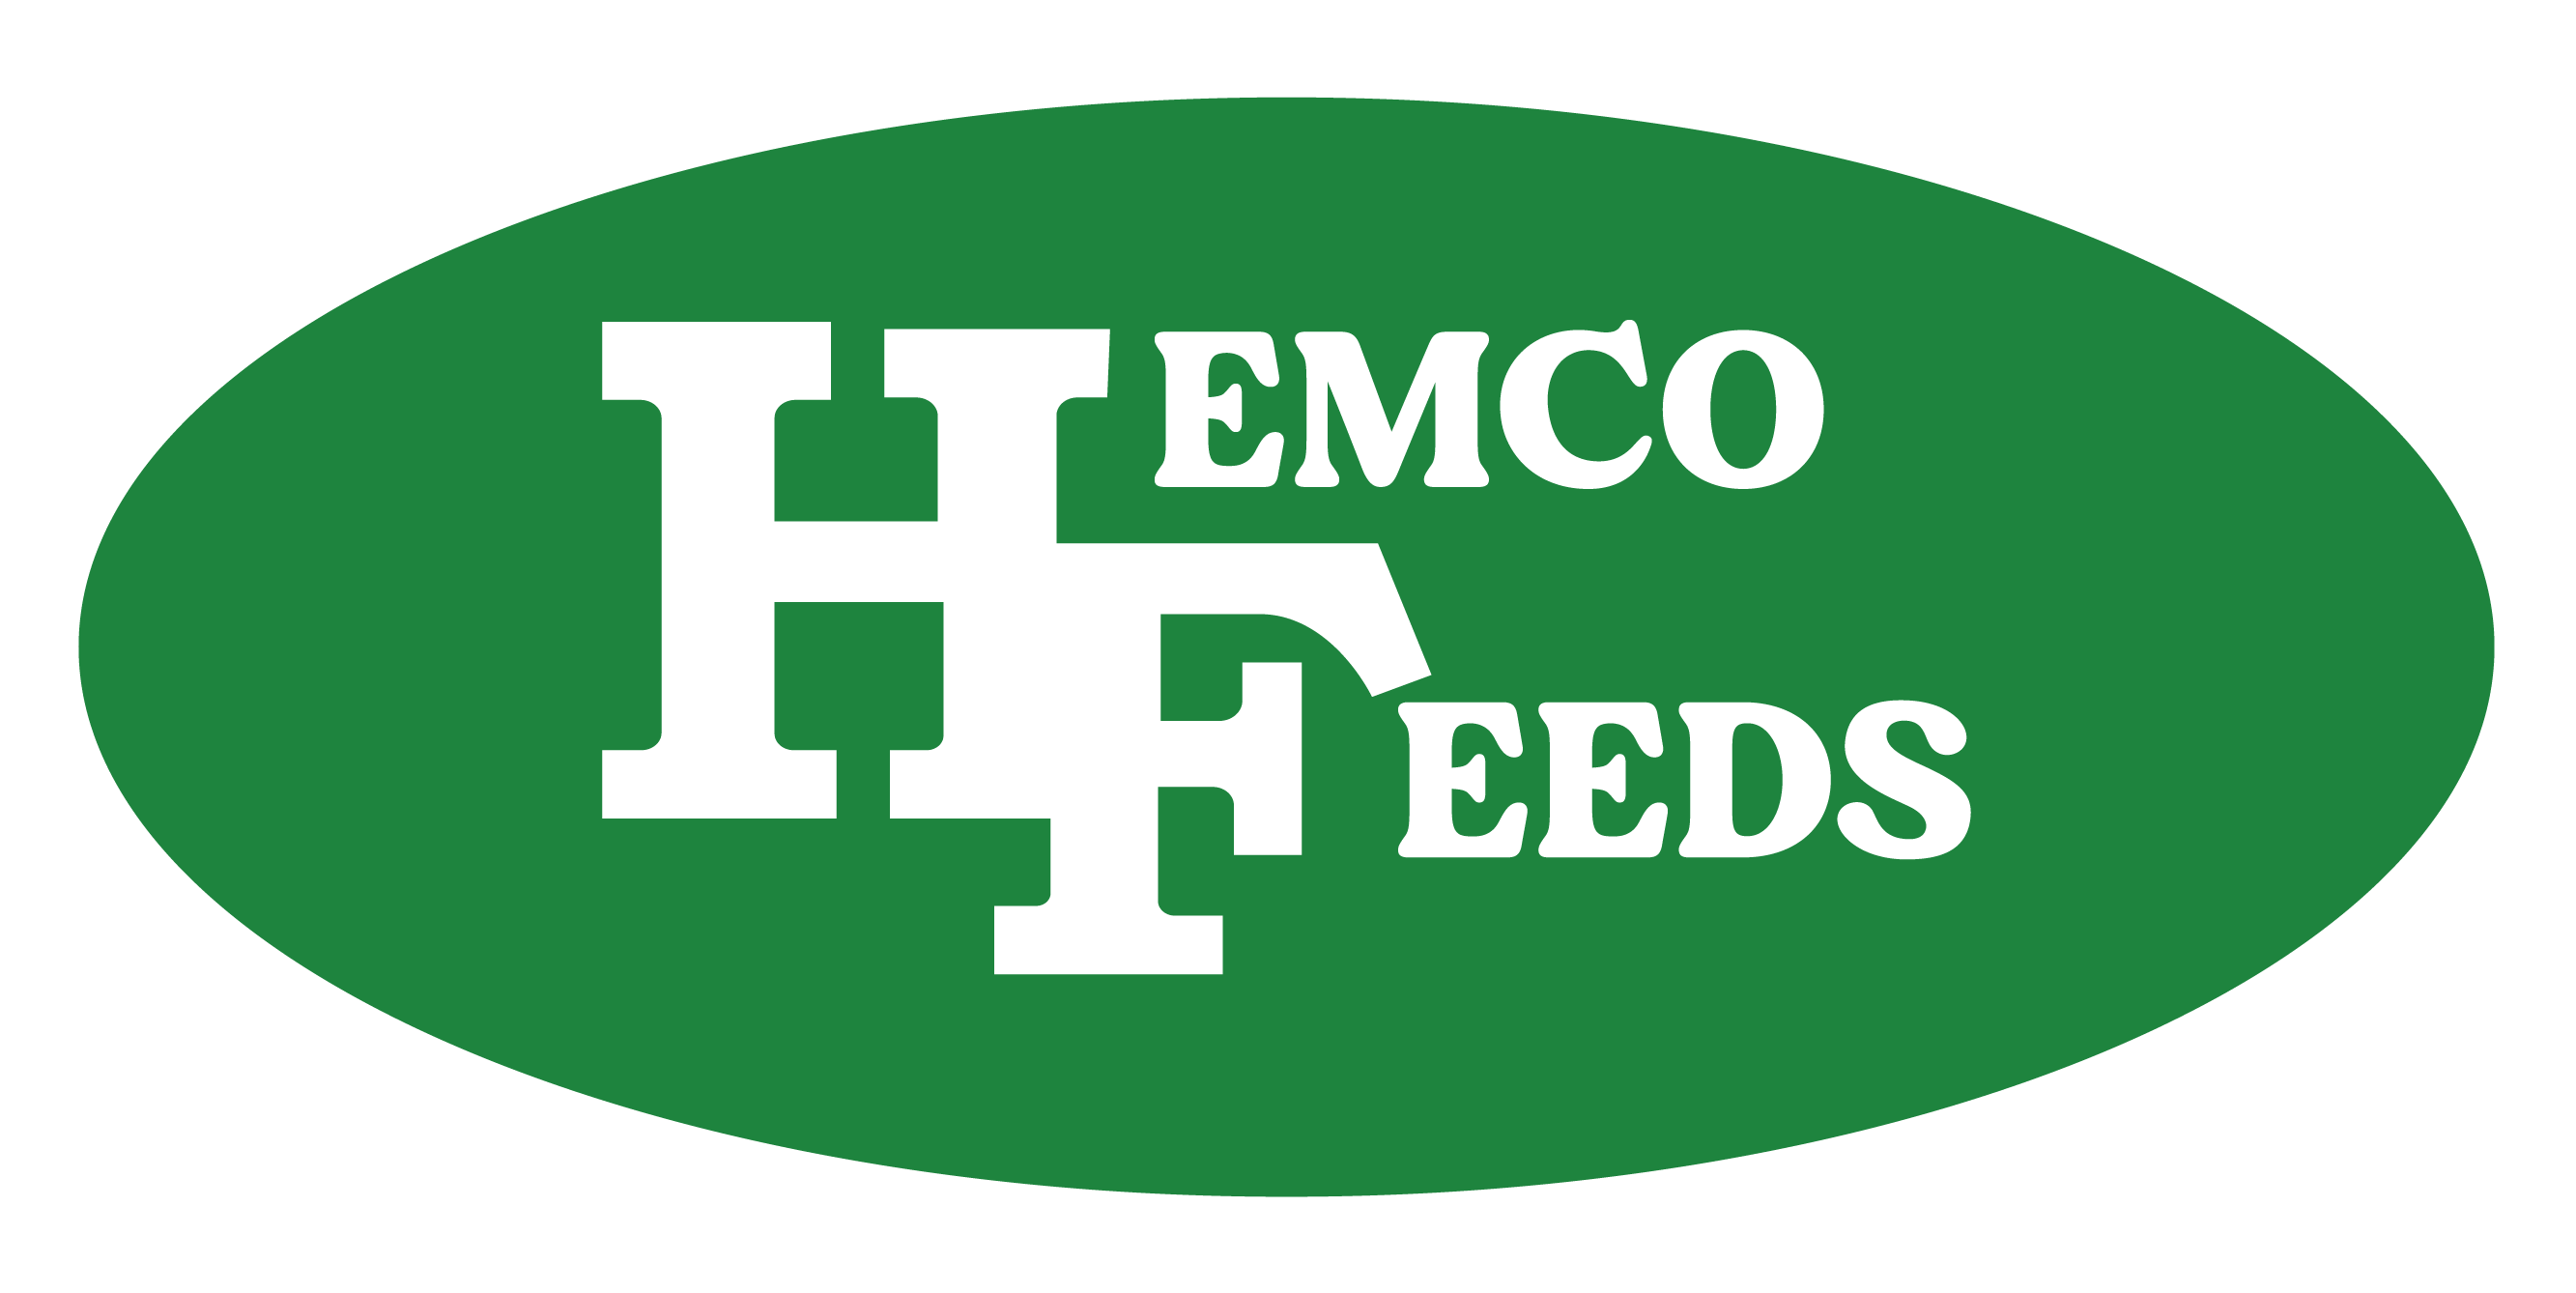 Hemco Feeds (K) Ltd